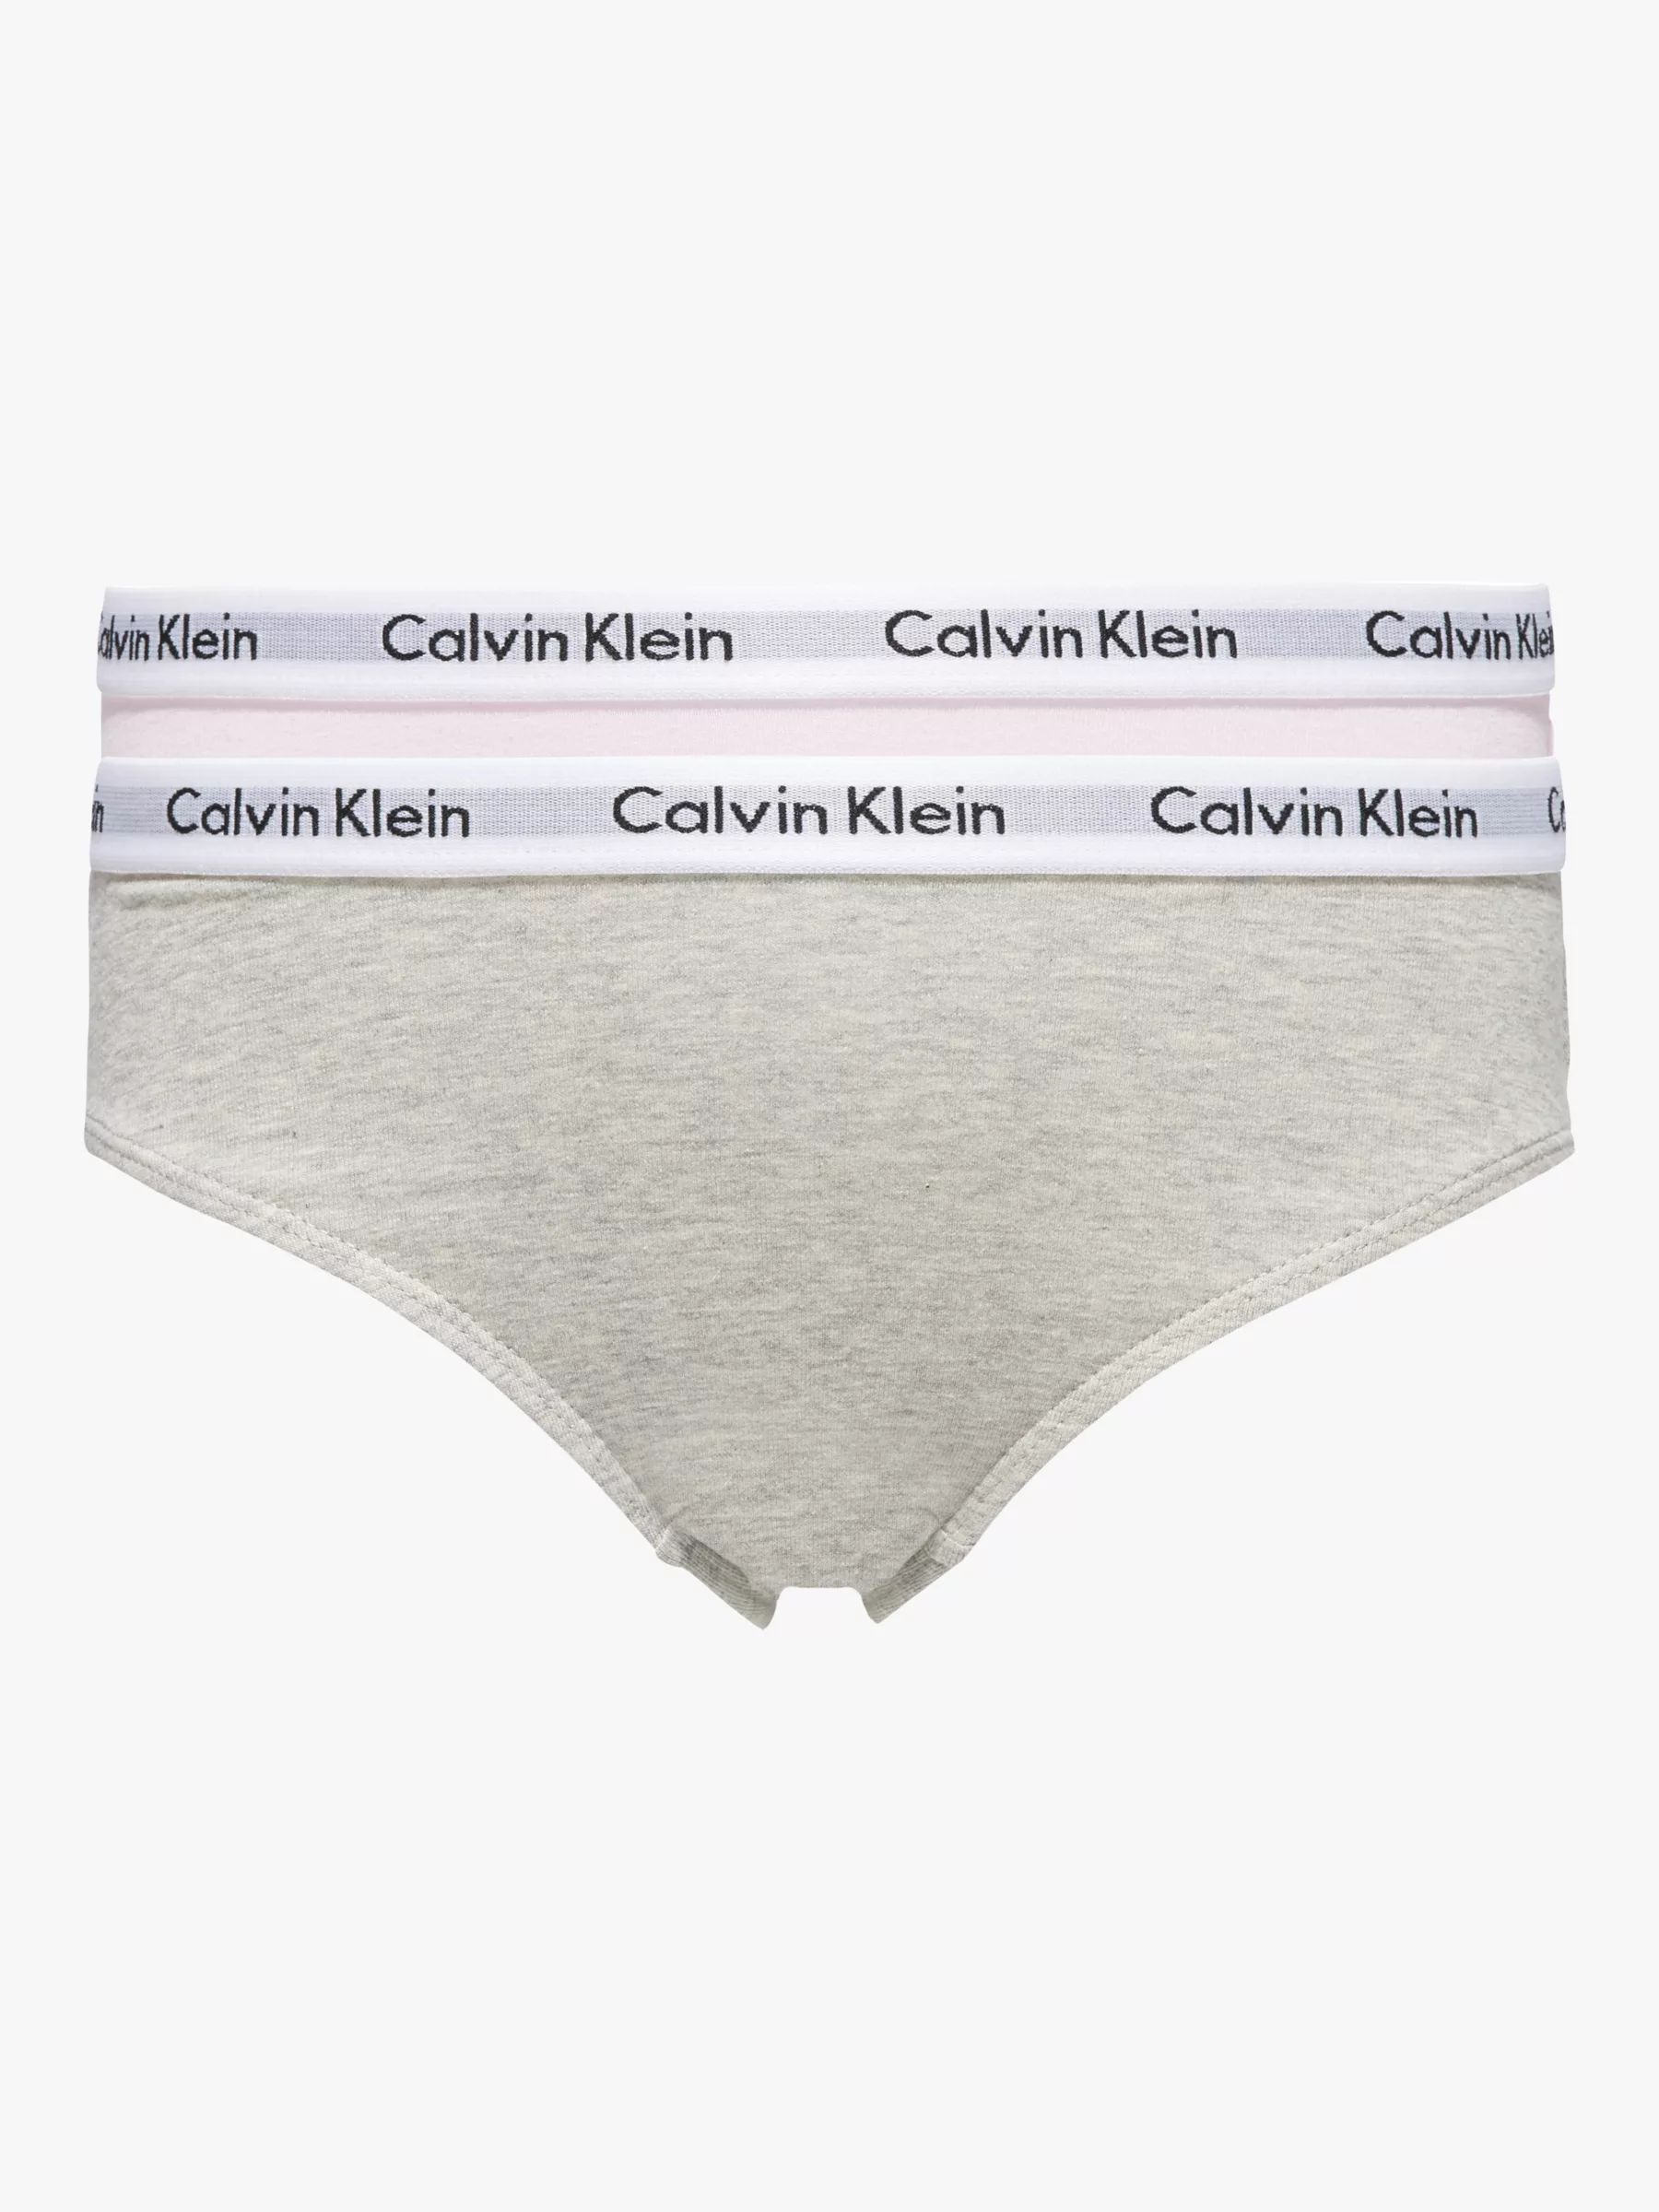 Calvin Klein Kids' Bikini Briefs, Pack of 2, Grey/Pink | John Lewis (UK)